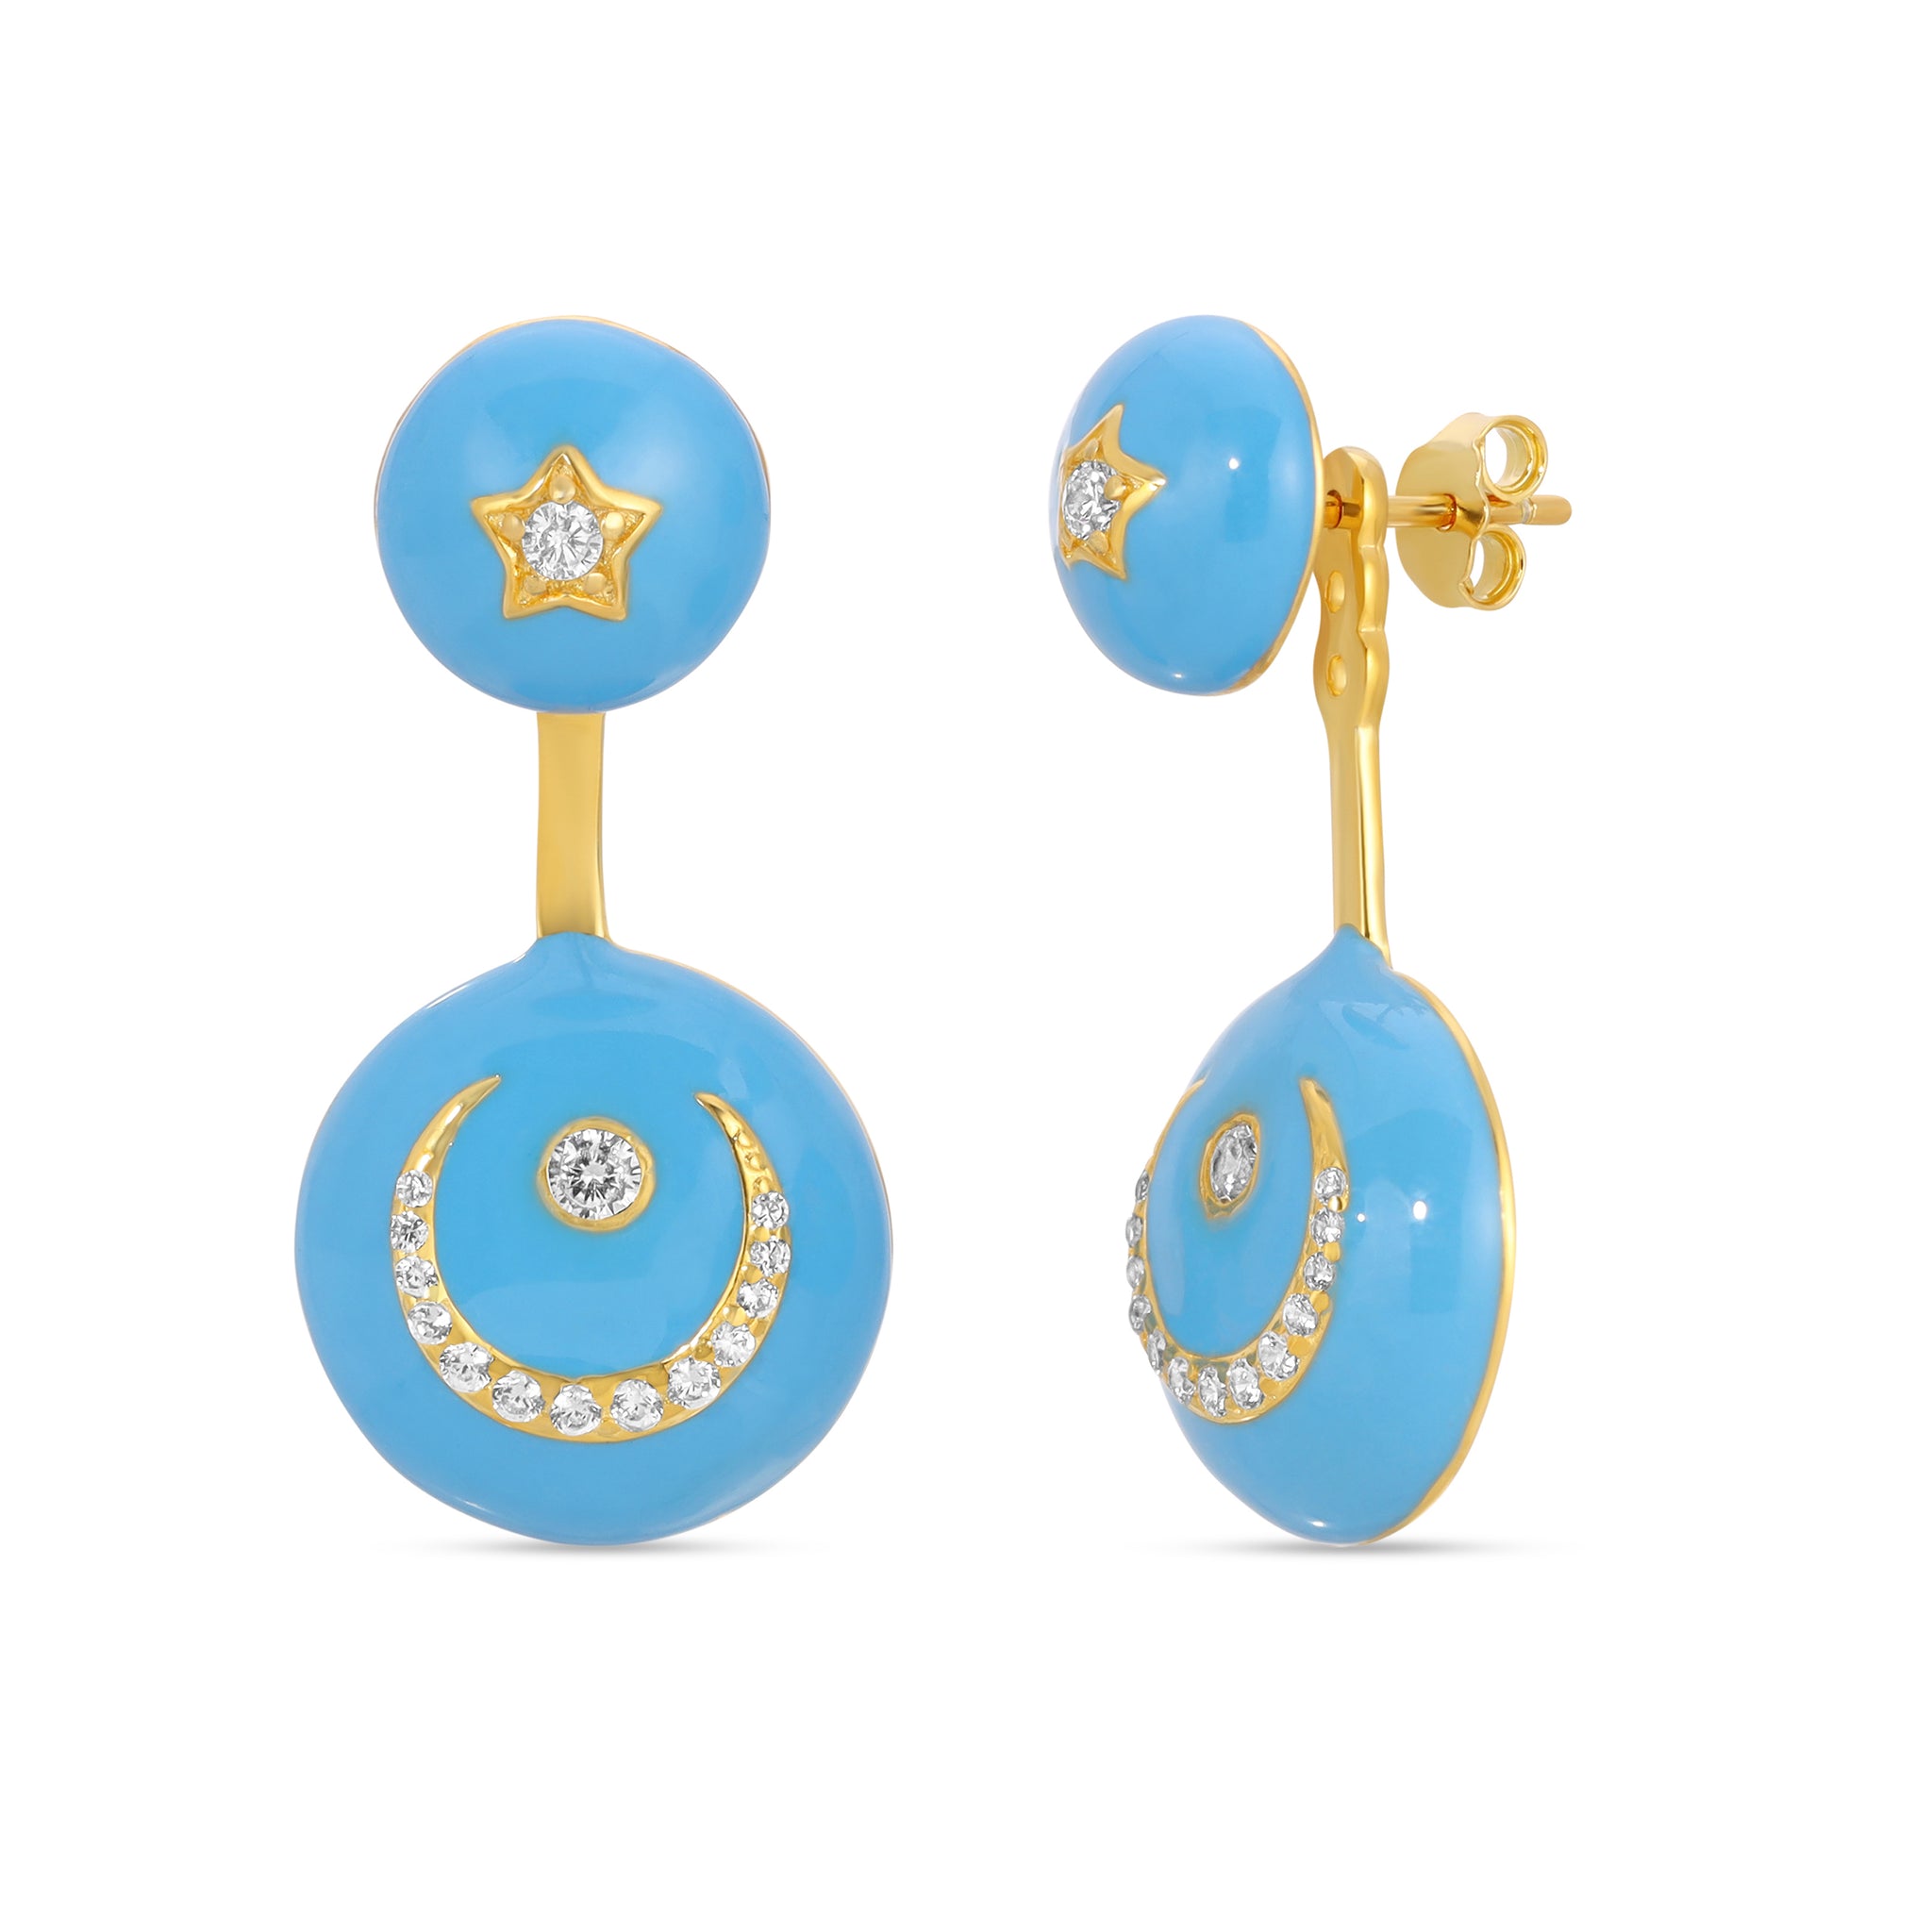 Turquoise Enamel Star & Moon Earrings